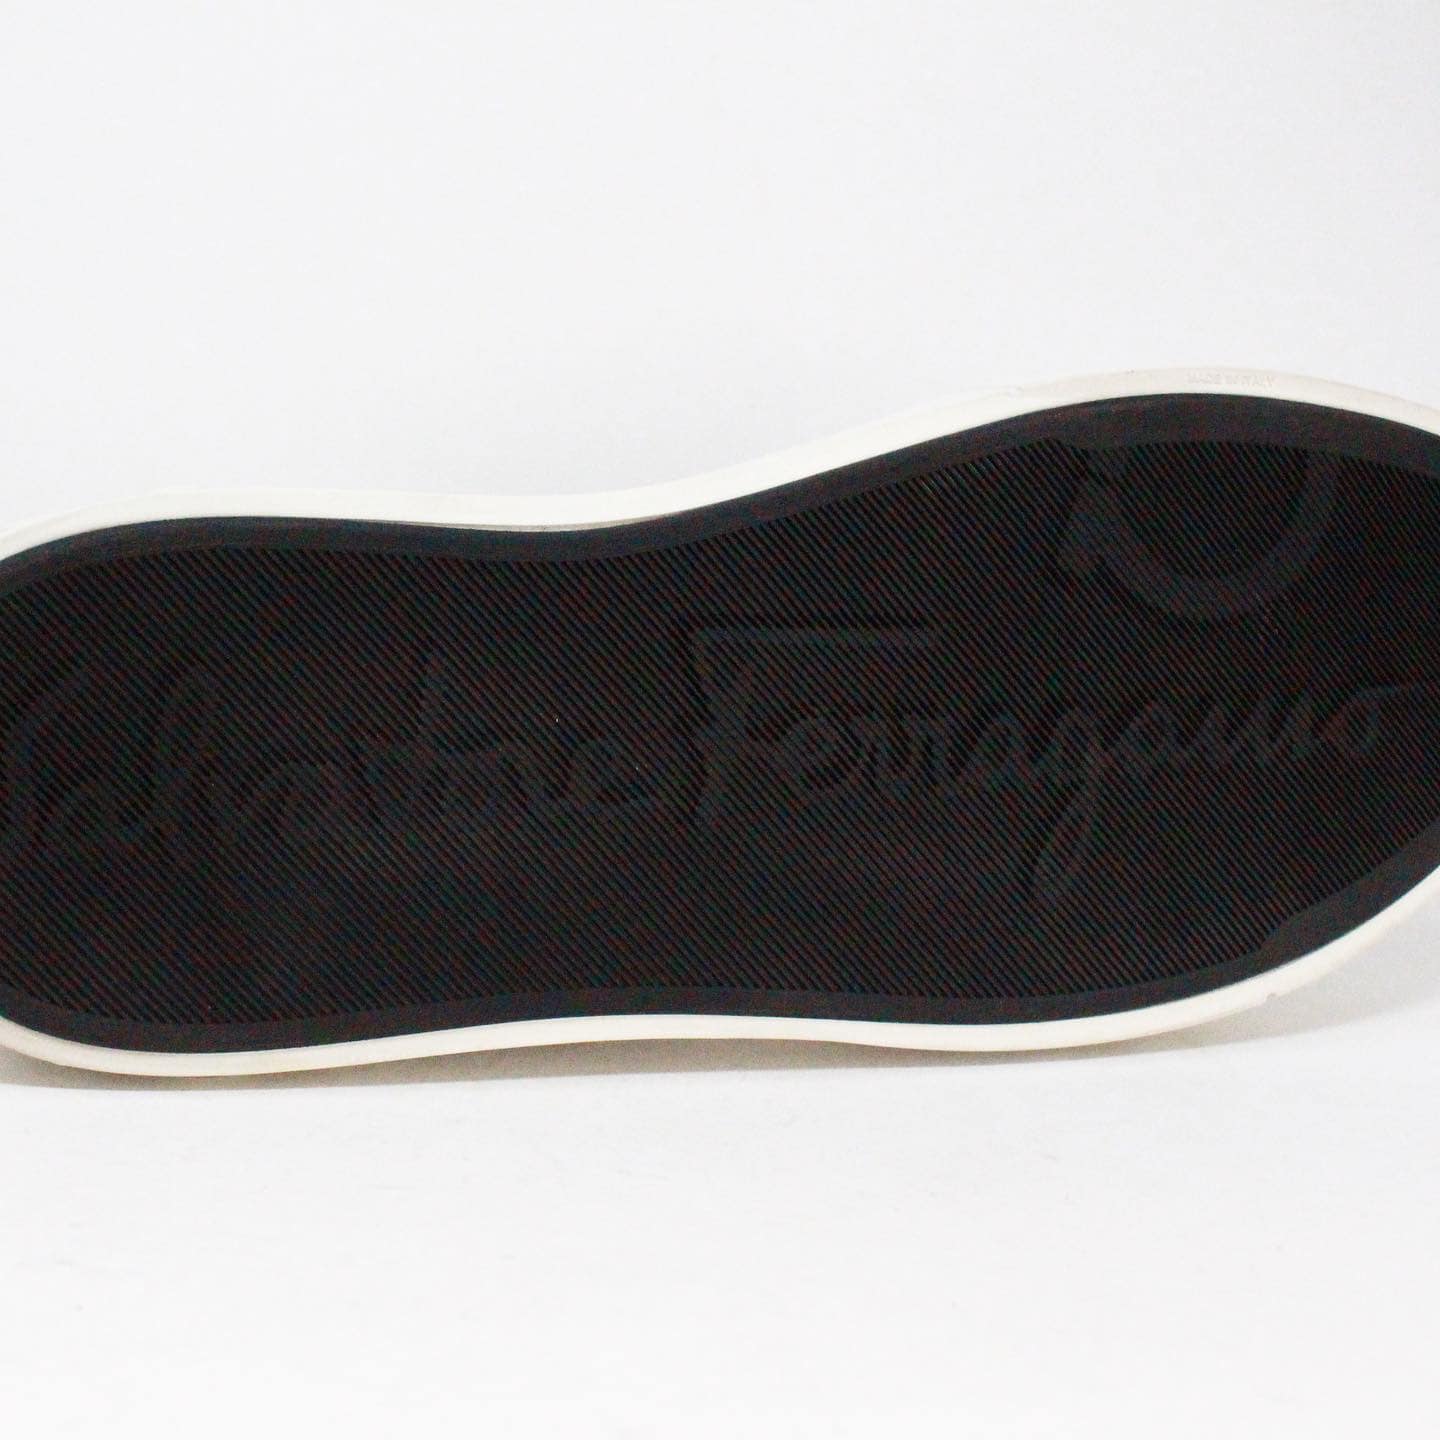 SALVATORE FERRAGAMO Black Leather Men's Sneakers item #40377 – ALL